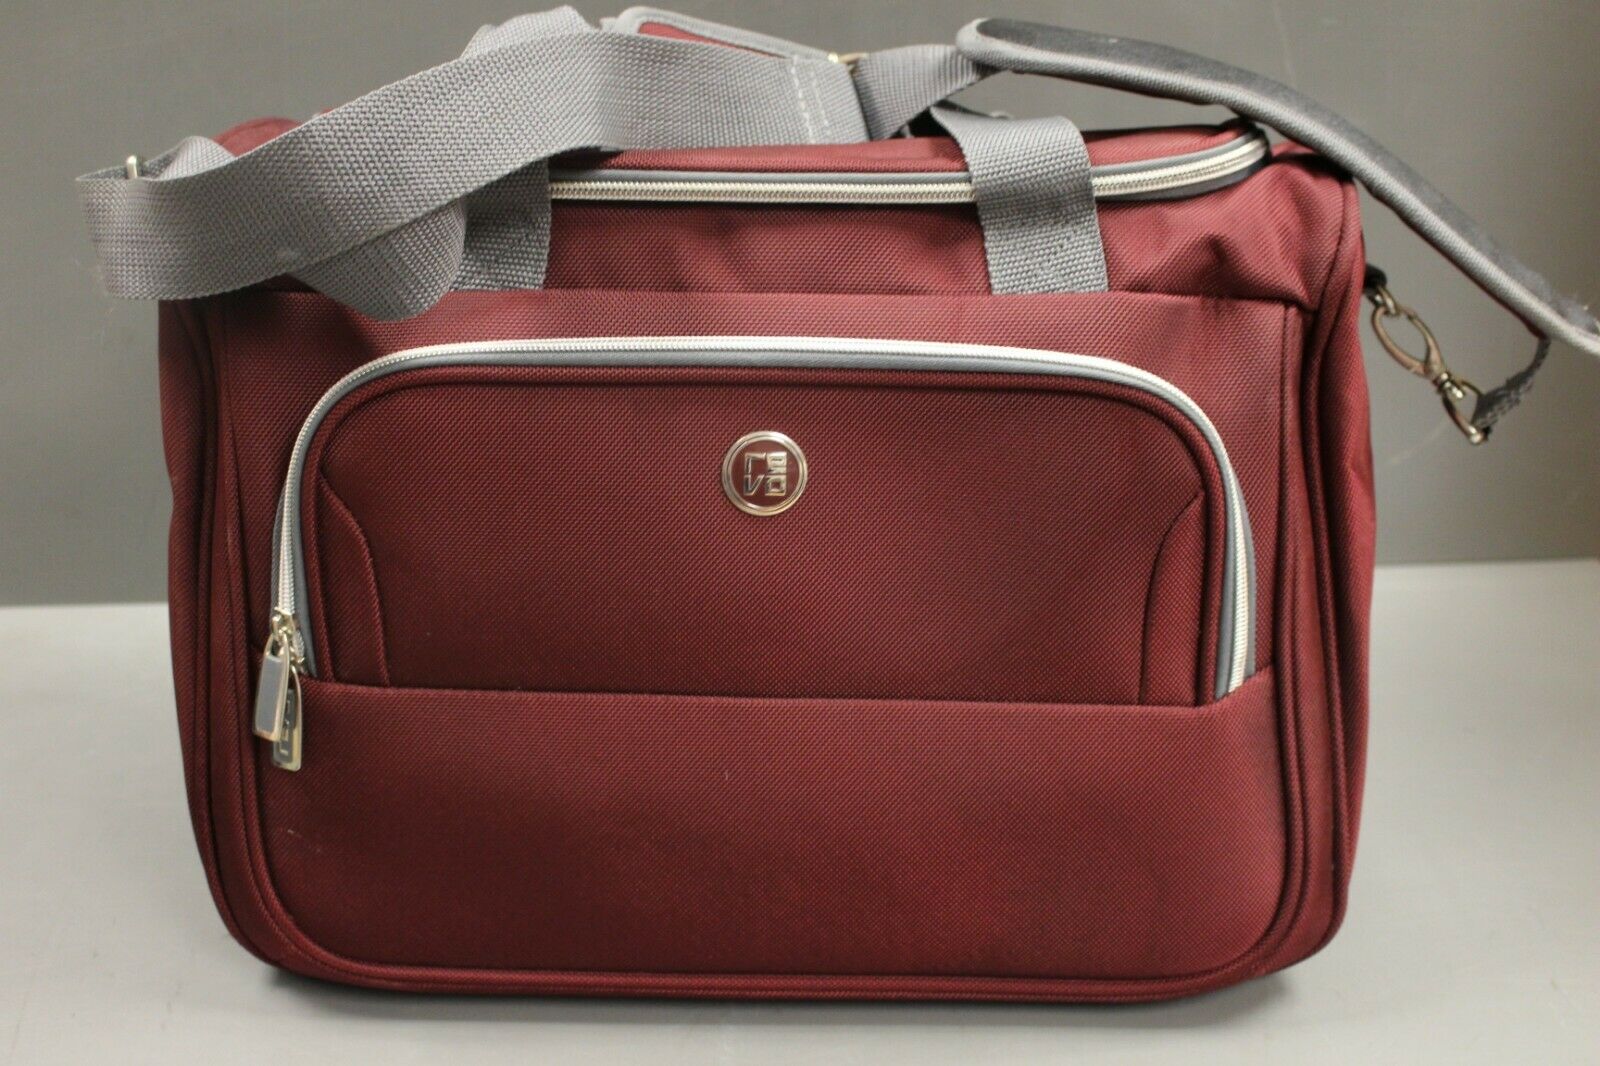 Buy Wholesale China Protege Gray 3pc Travel Luggage Set 24